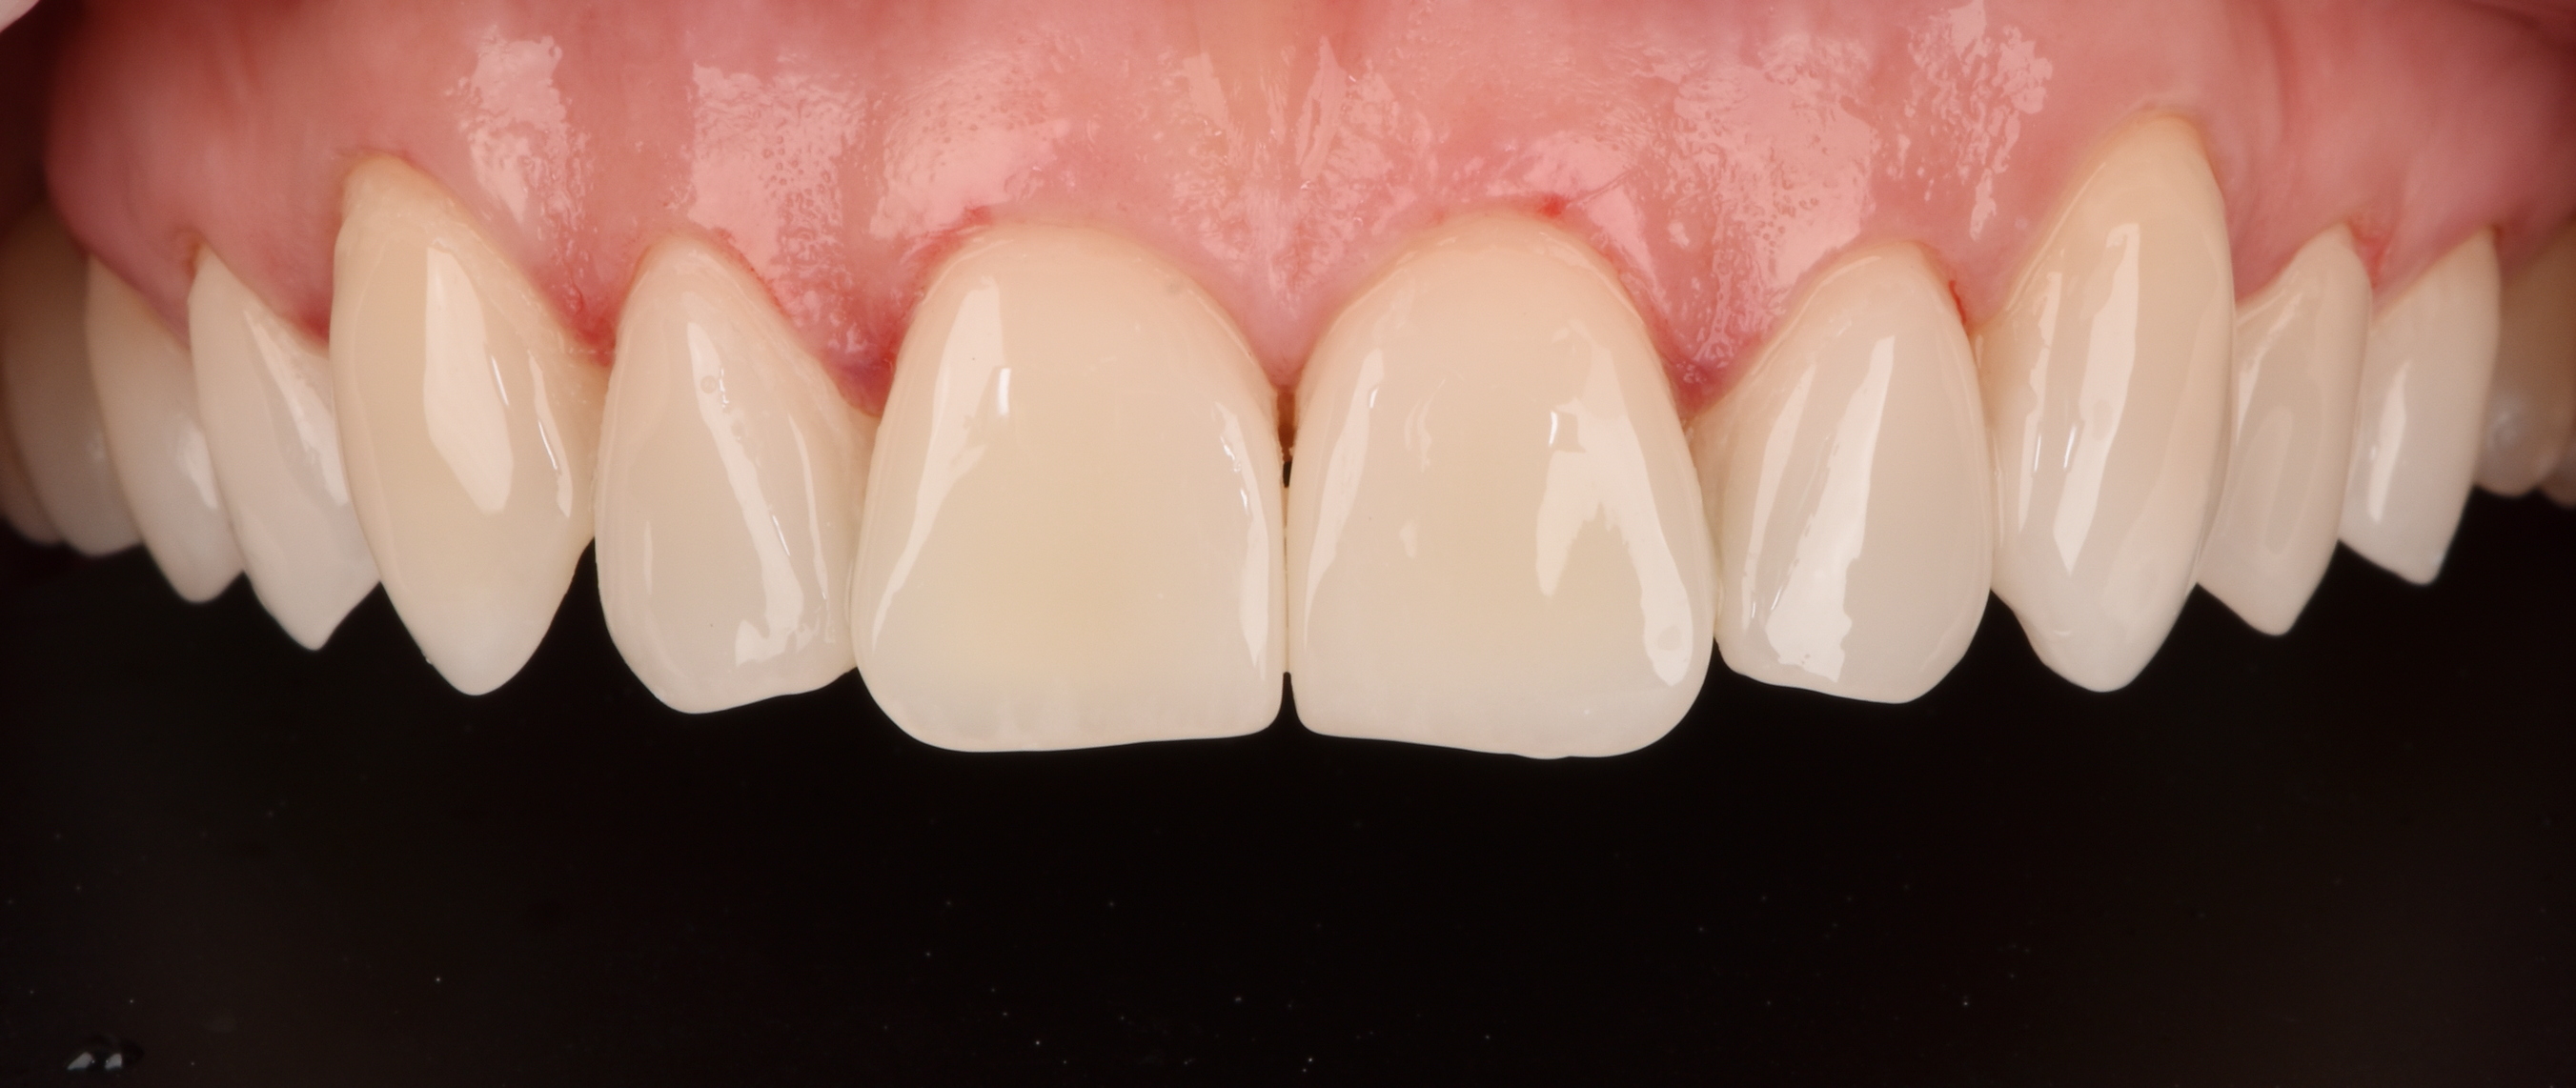 Композитная реставрация 6 зуба. Цифровой дизайн улыбки DSD.